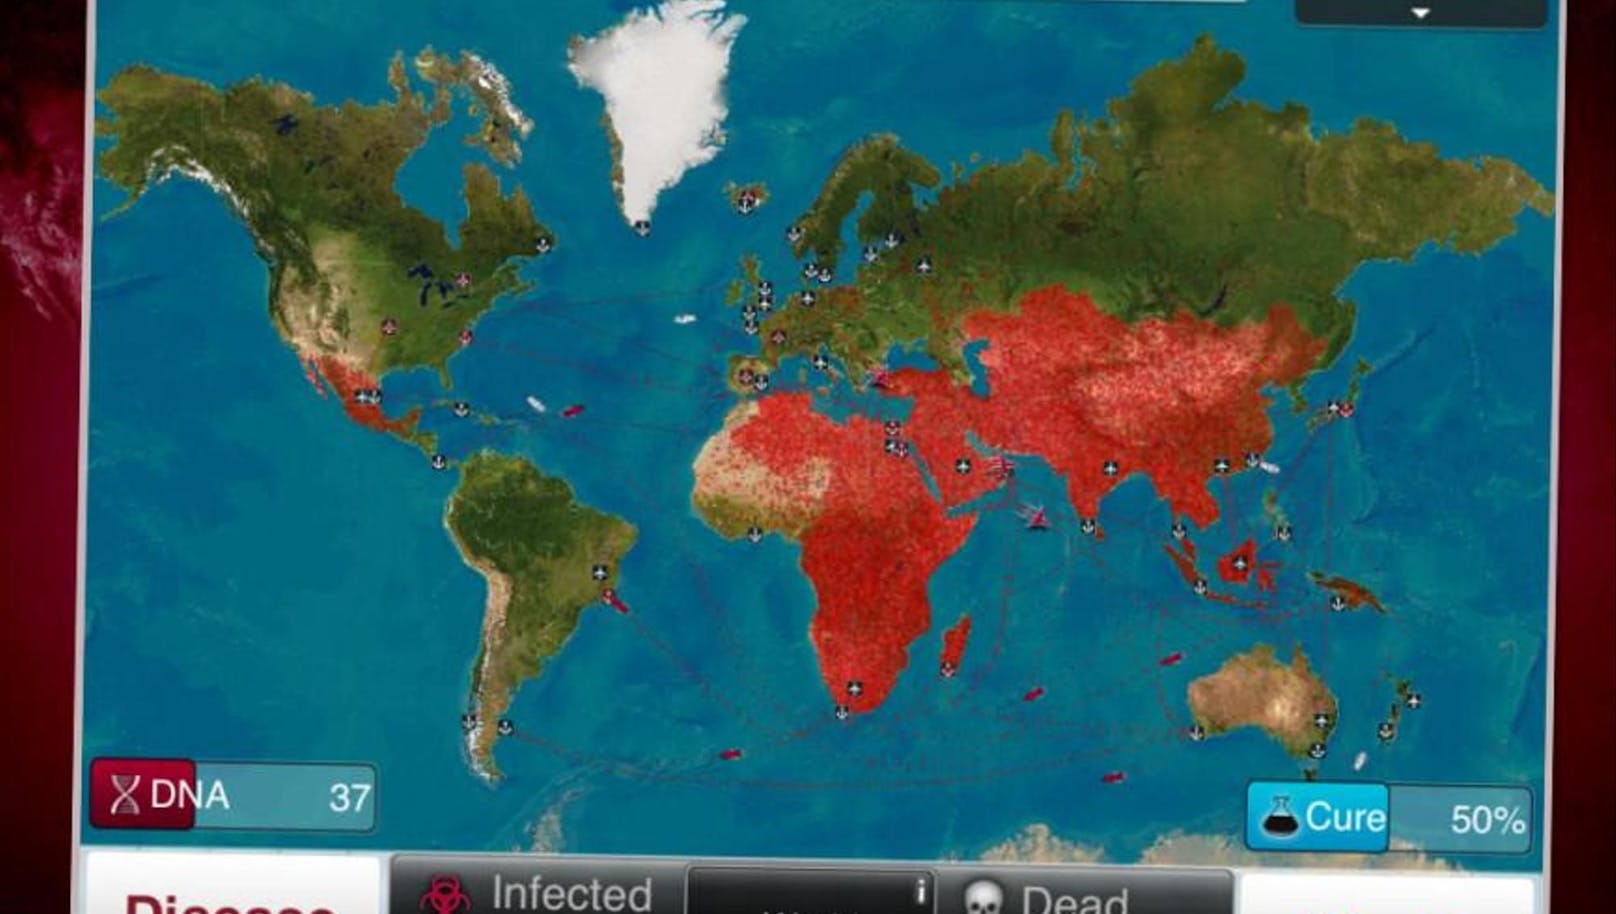 Das Spiel beschäftigt sich mit weltweiten Pandemien.